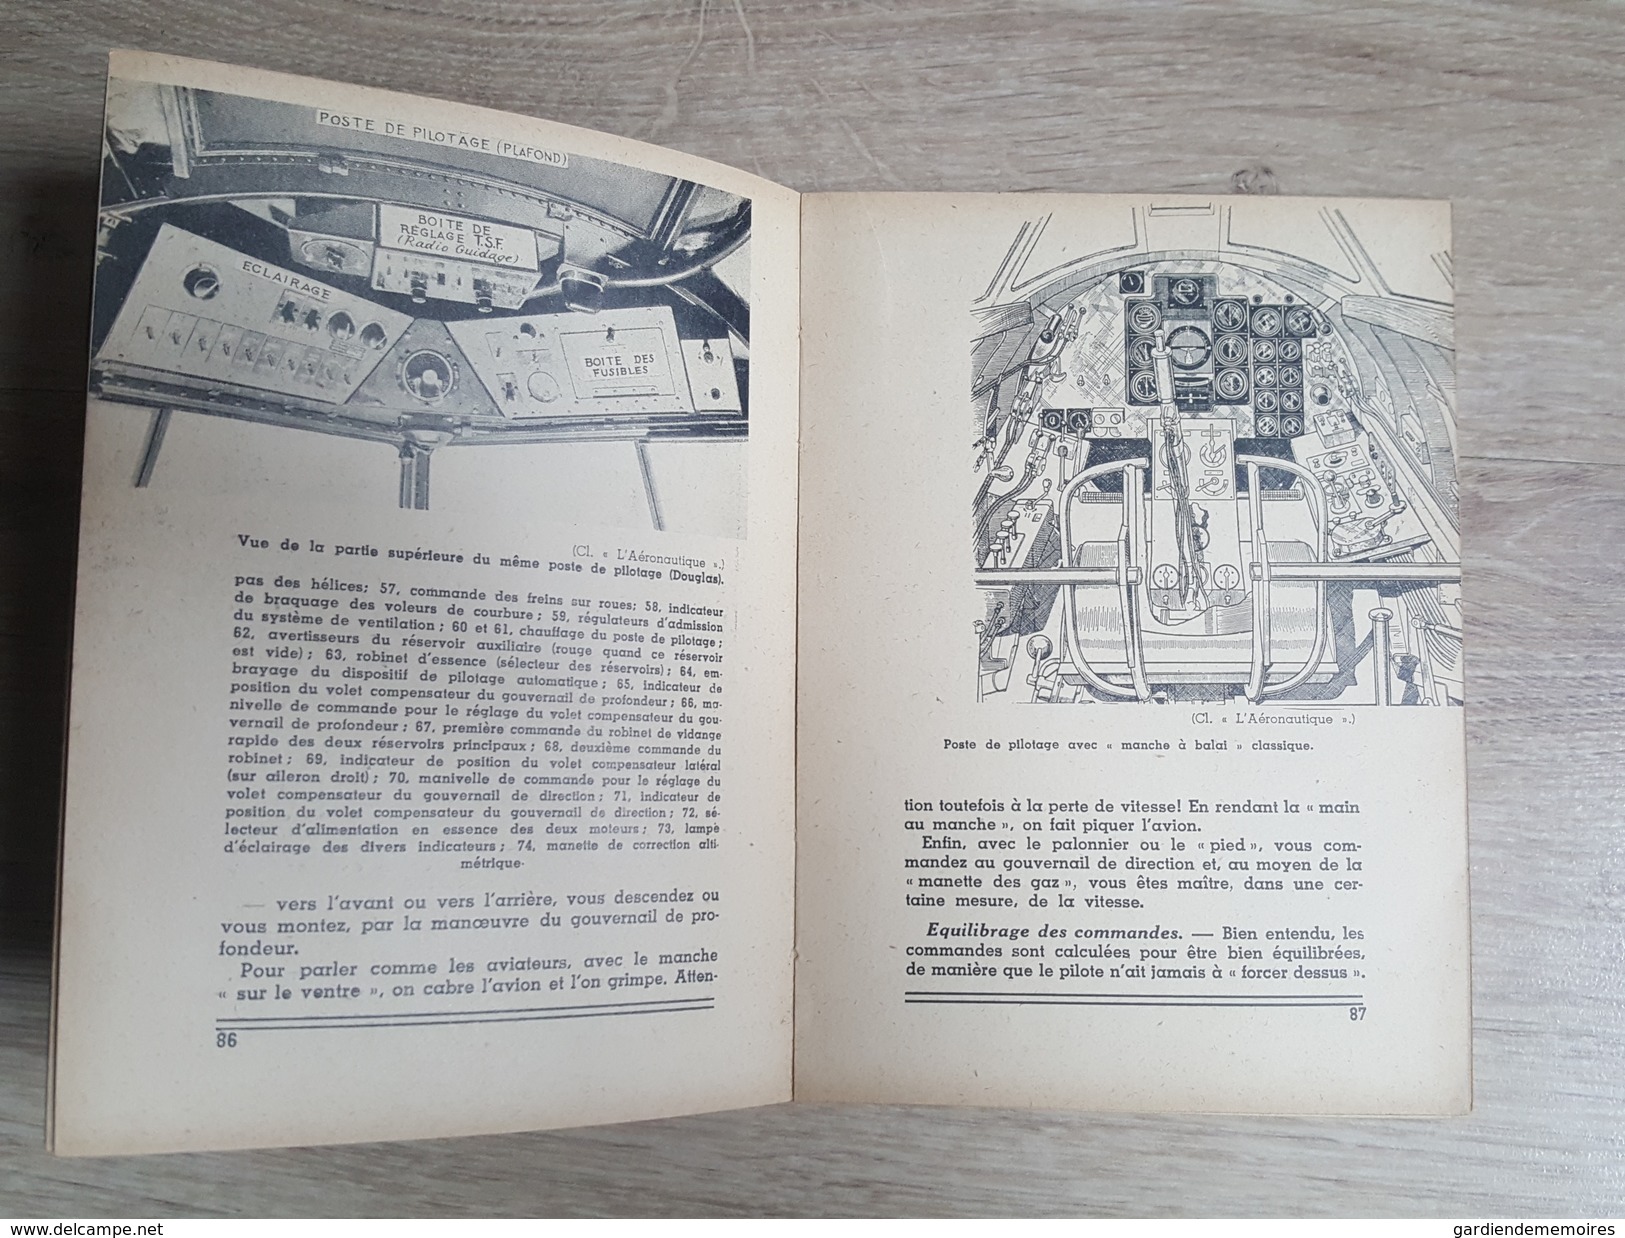 Livre sur l'Aviation - Ce qu'est un avion moderne - Nombreuses photos, schémas... Par Pierre Dublanc